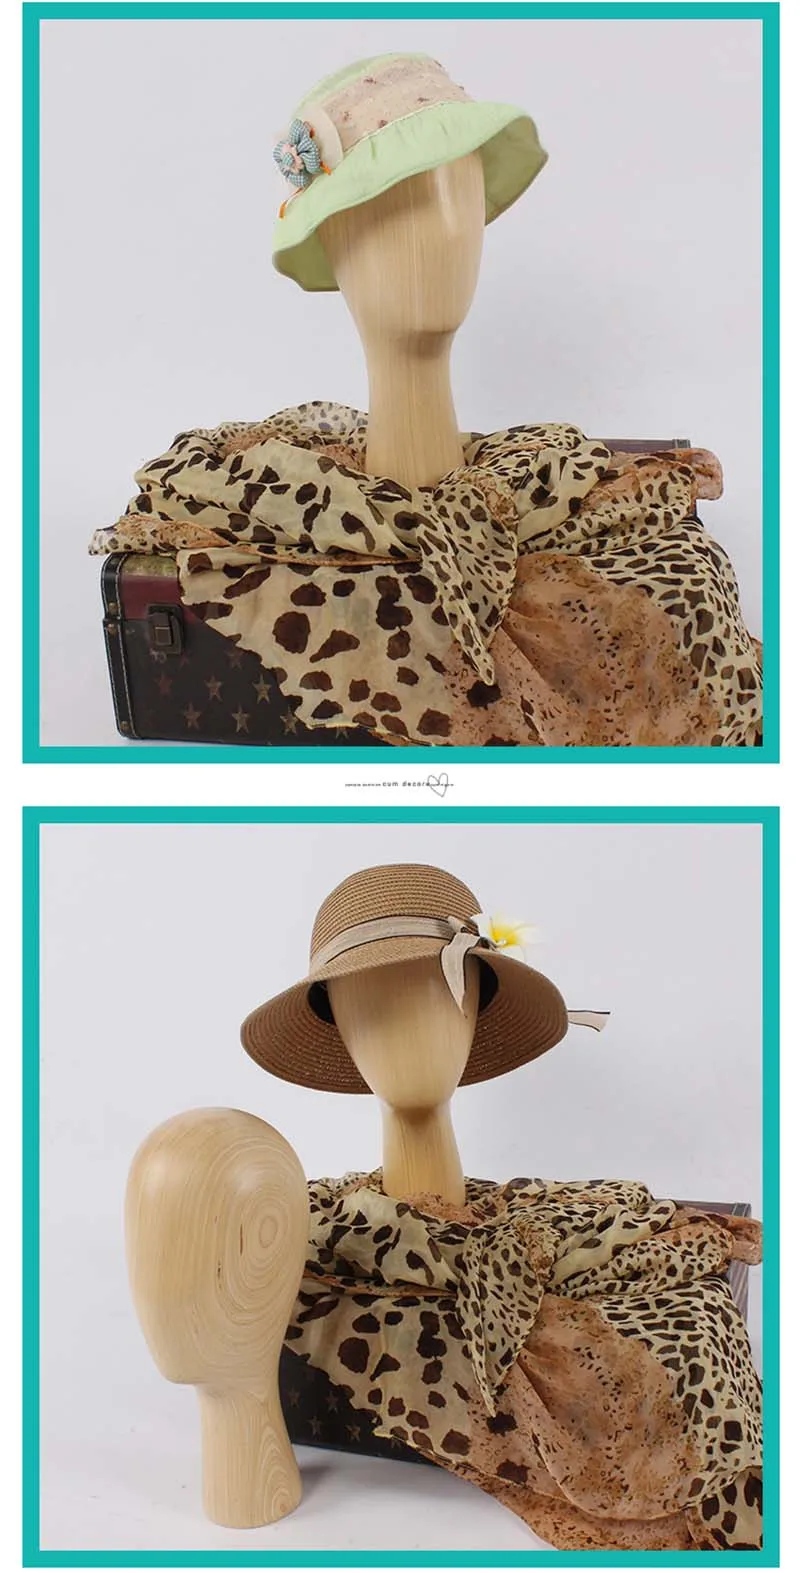 マネキンヘッドディスプレイマネキン木製ヘッドモデル帽子用 Buy Wooden Head Model Mannequin Display Head Mannequin Heads Display Product On Alibaba Com